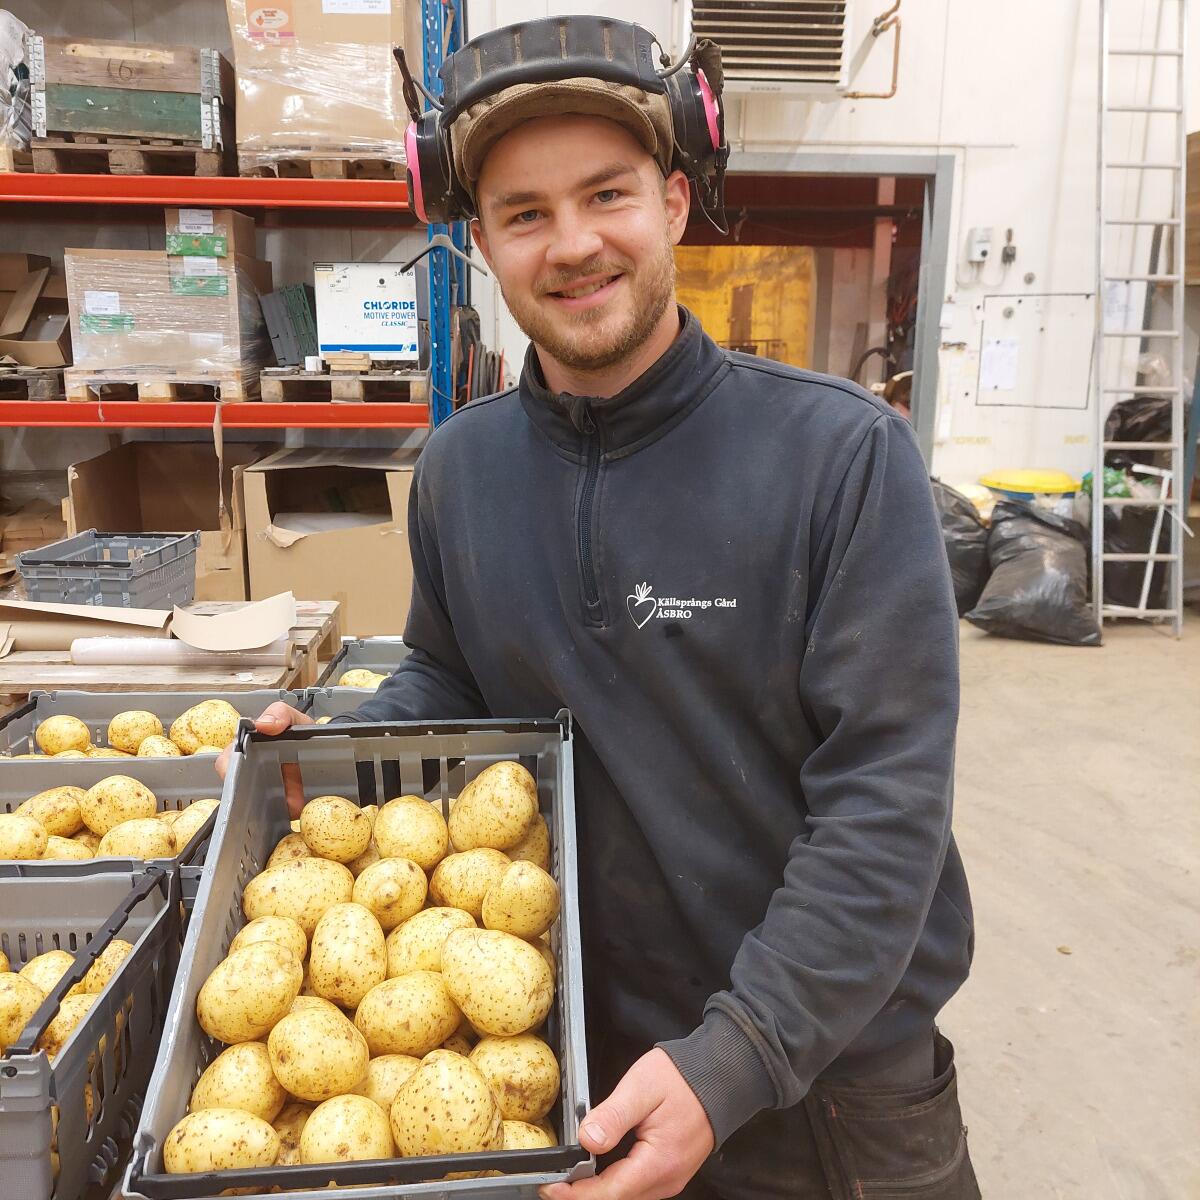 Källsprångs Gård's Potatoes return'